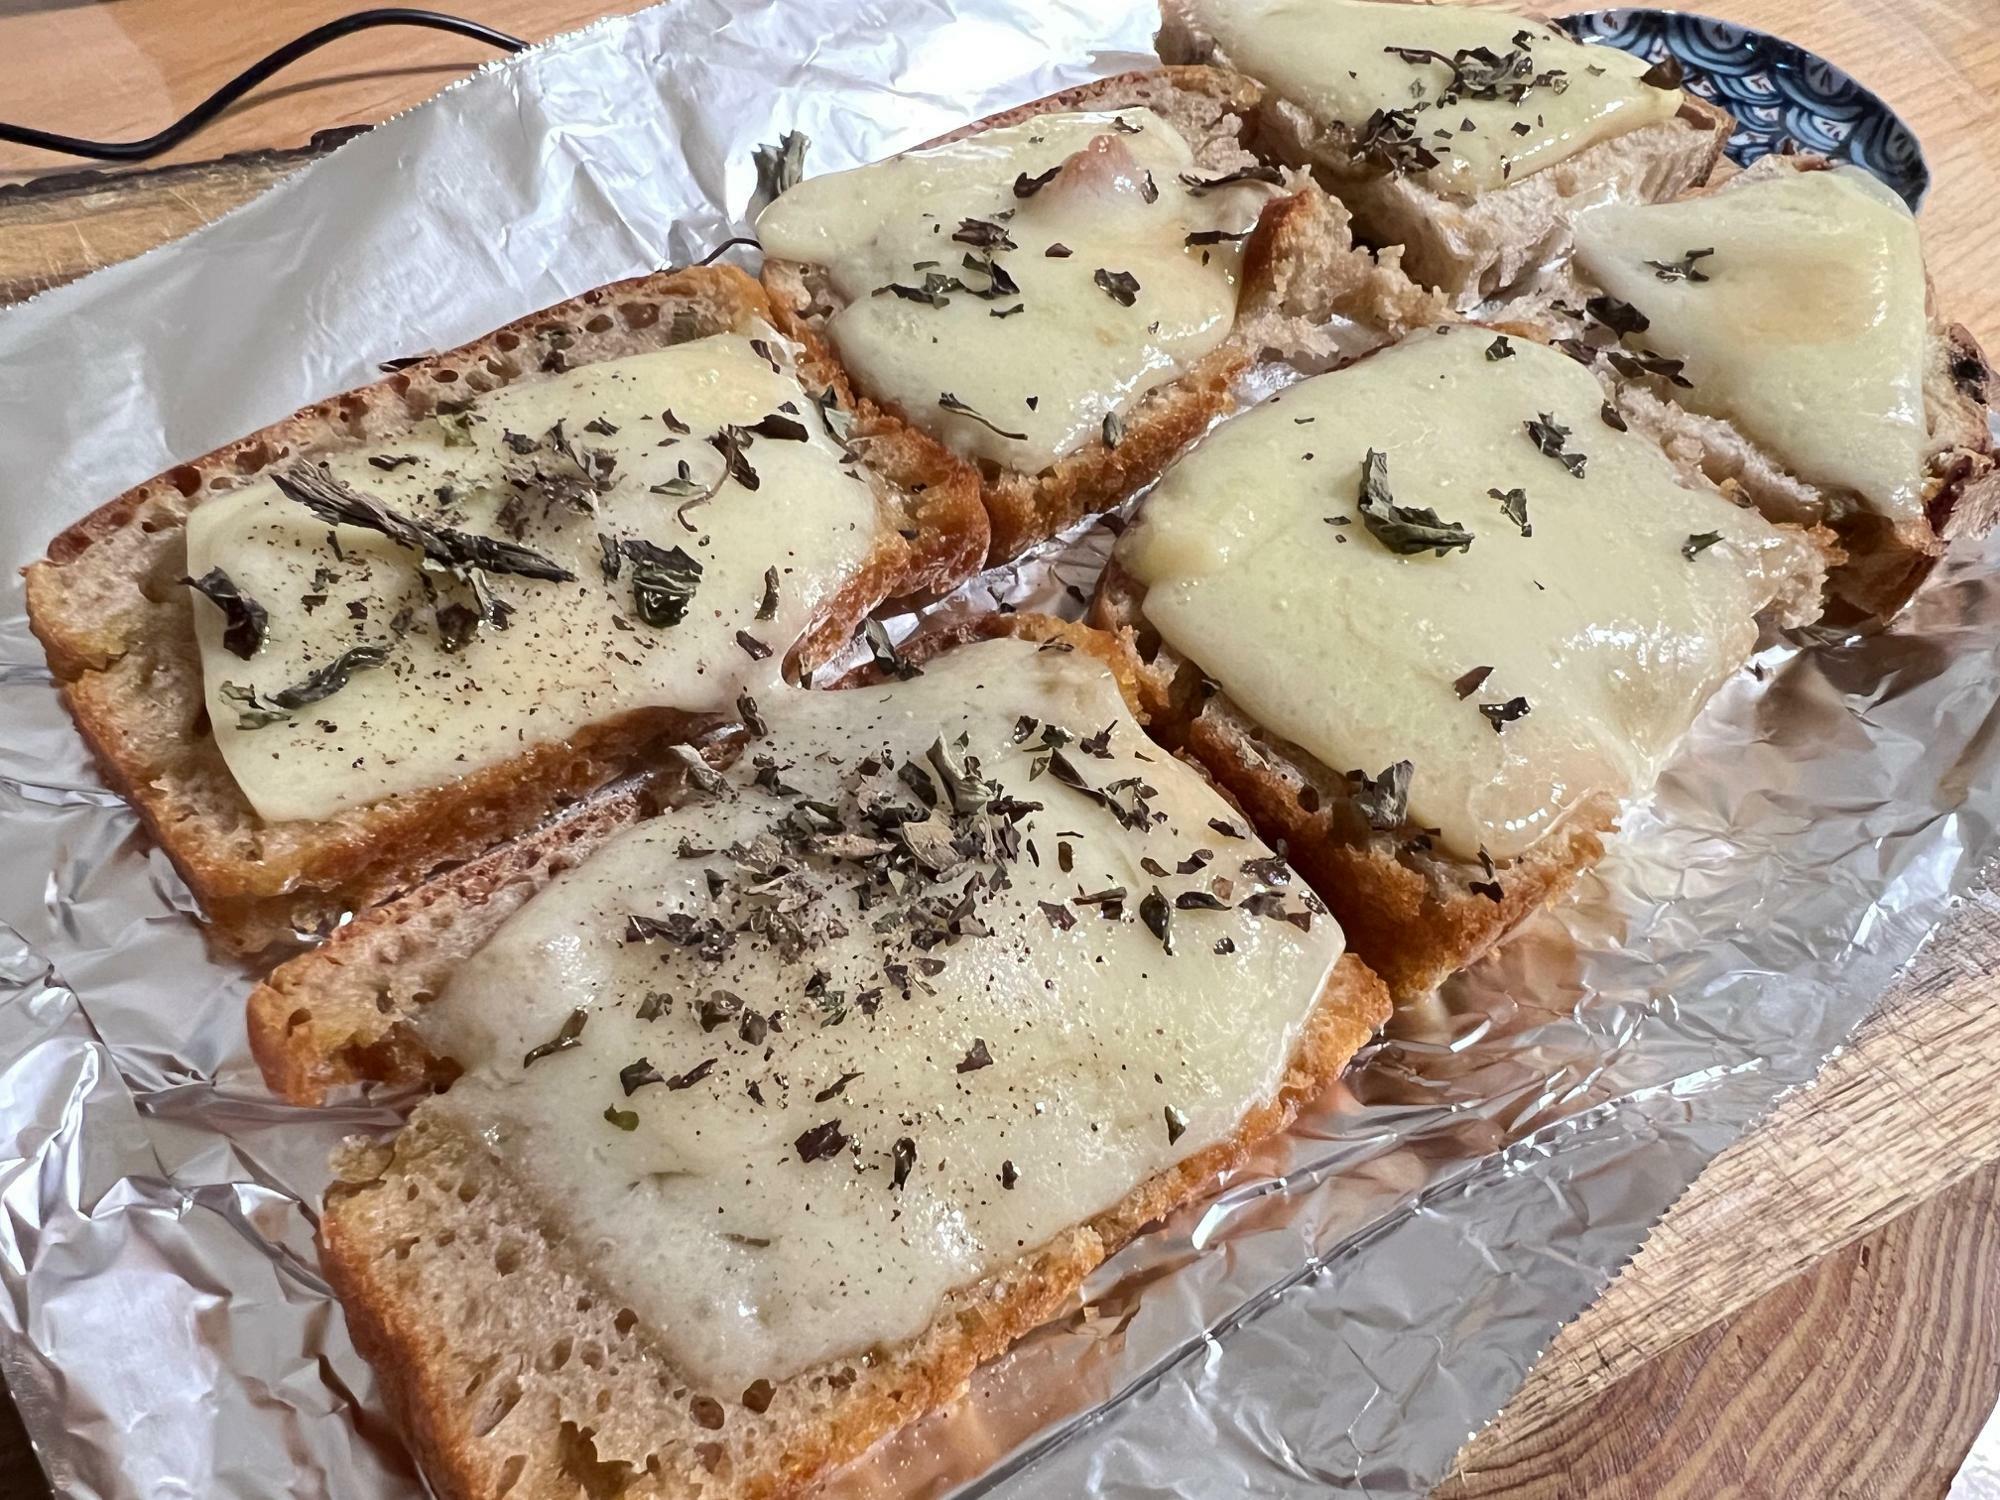 昨日やった友人との持ち寄りパン会の残りのパンとチーズですが、実はこれ、とても入手困難なものなんです。